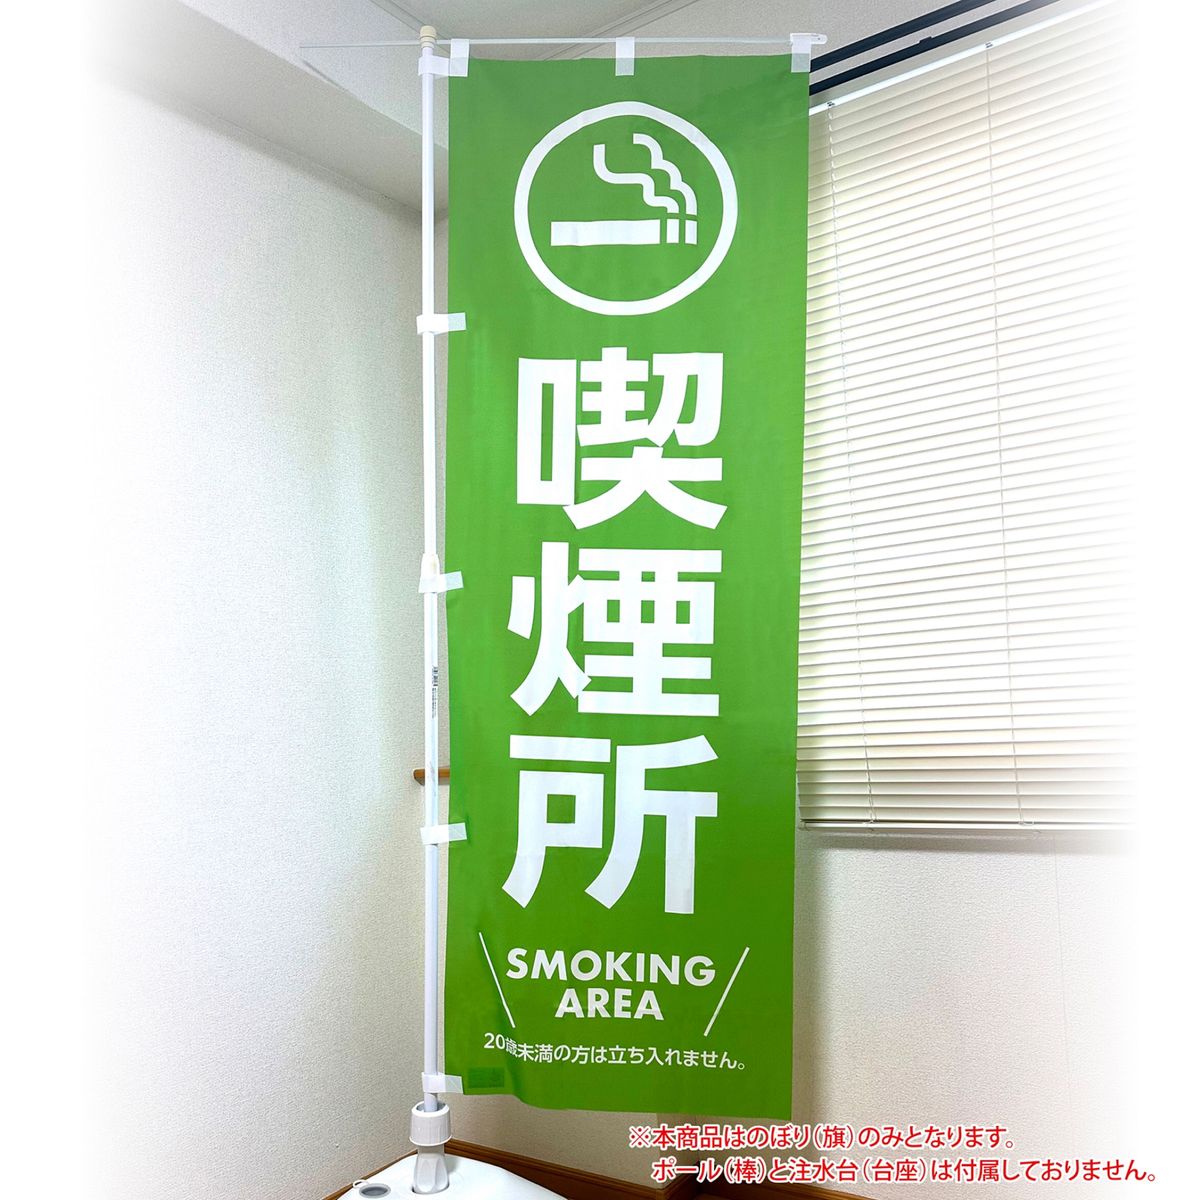 喫煙所のぼり旗 SMOKING AREA 〜イベント等の喫煙場所の案内幟として